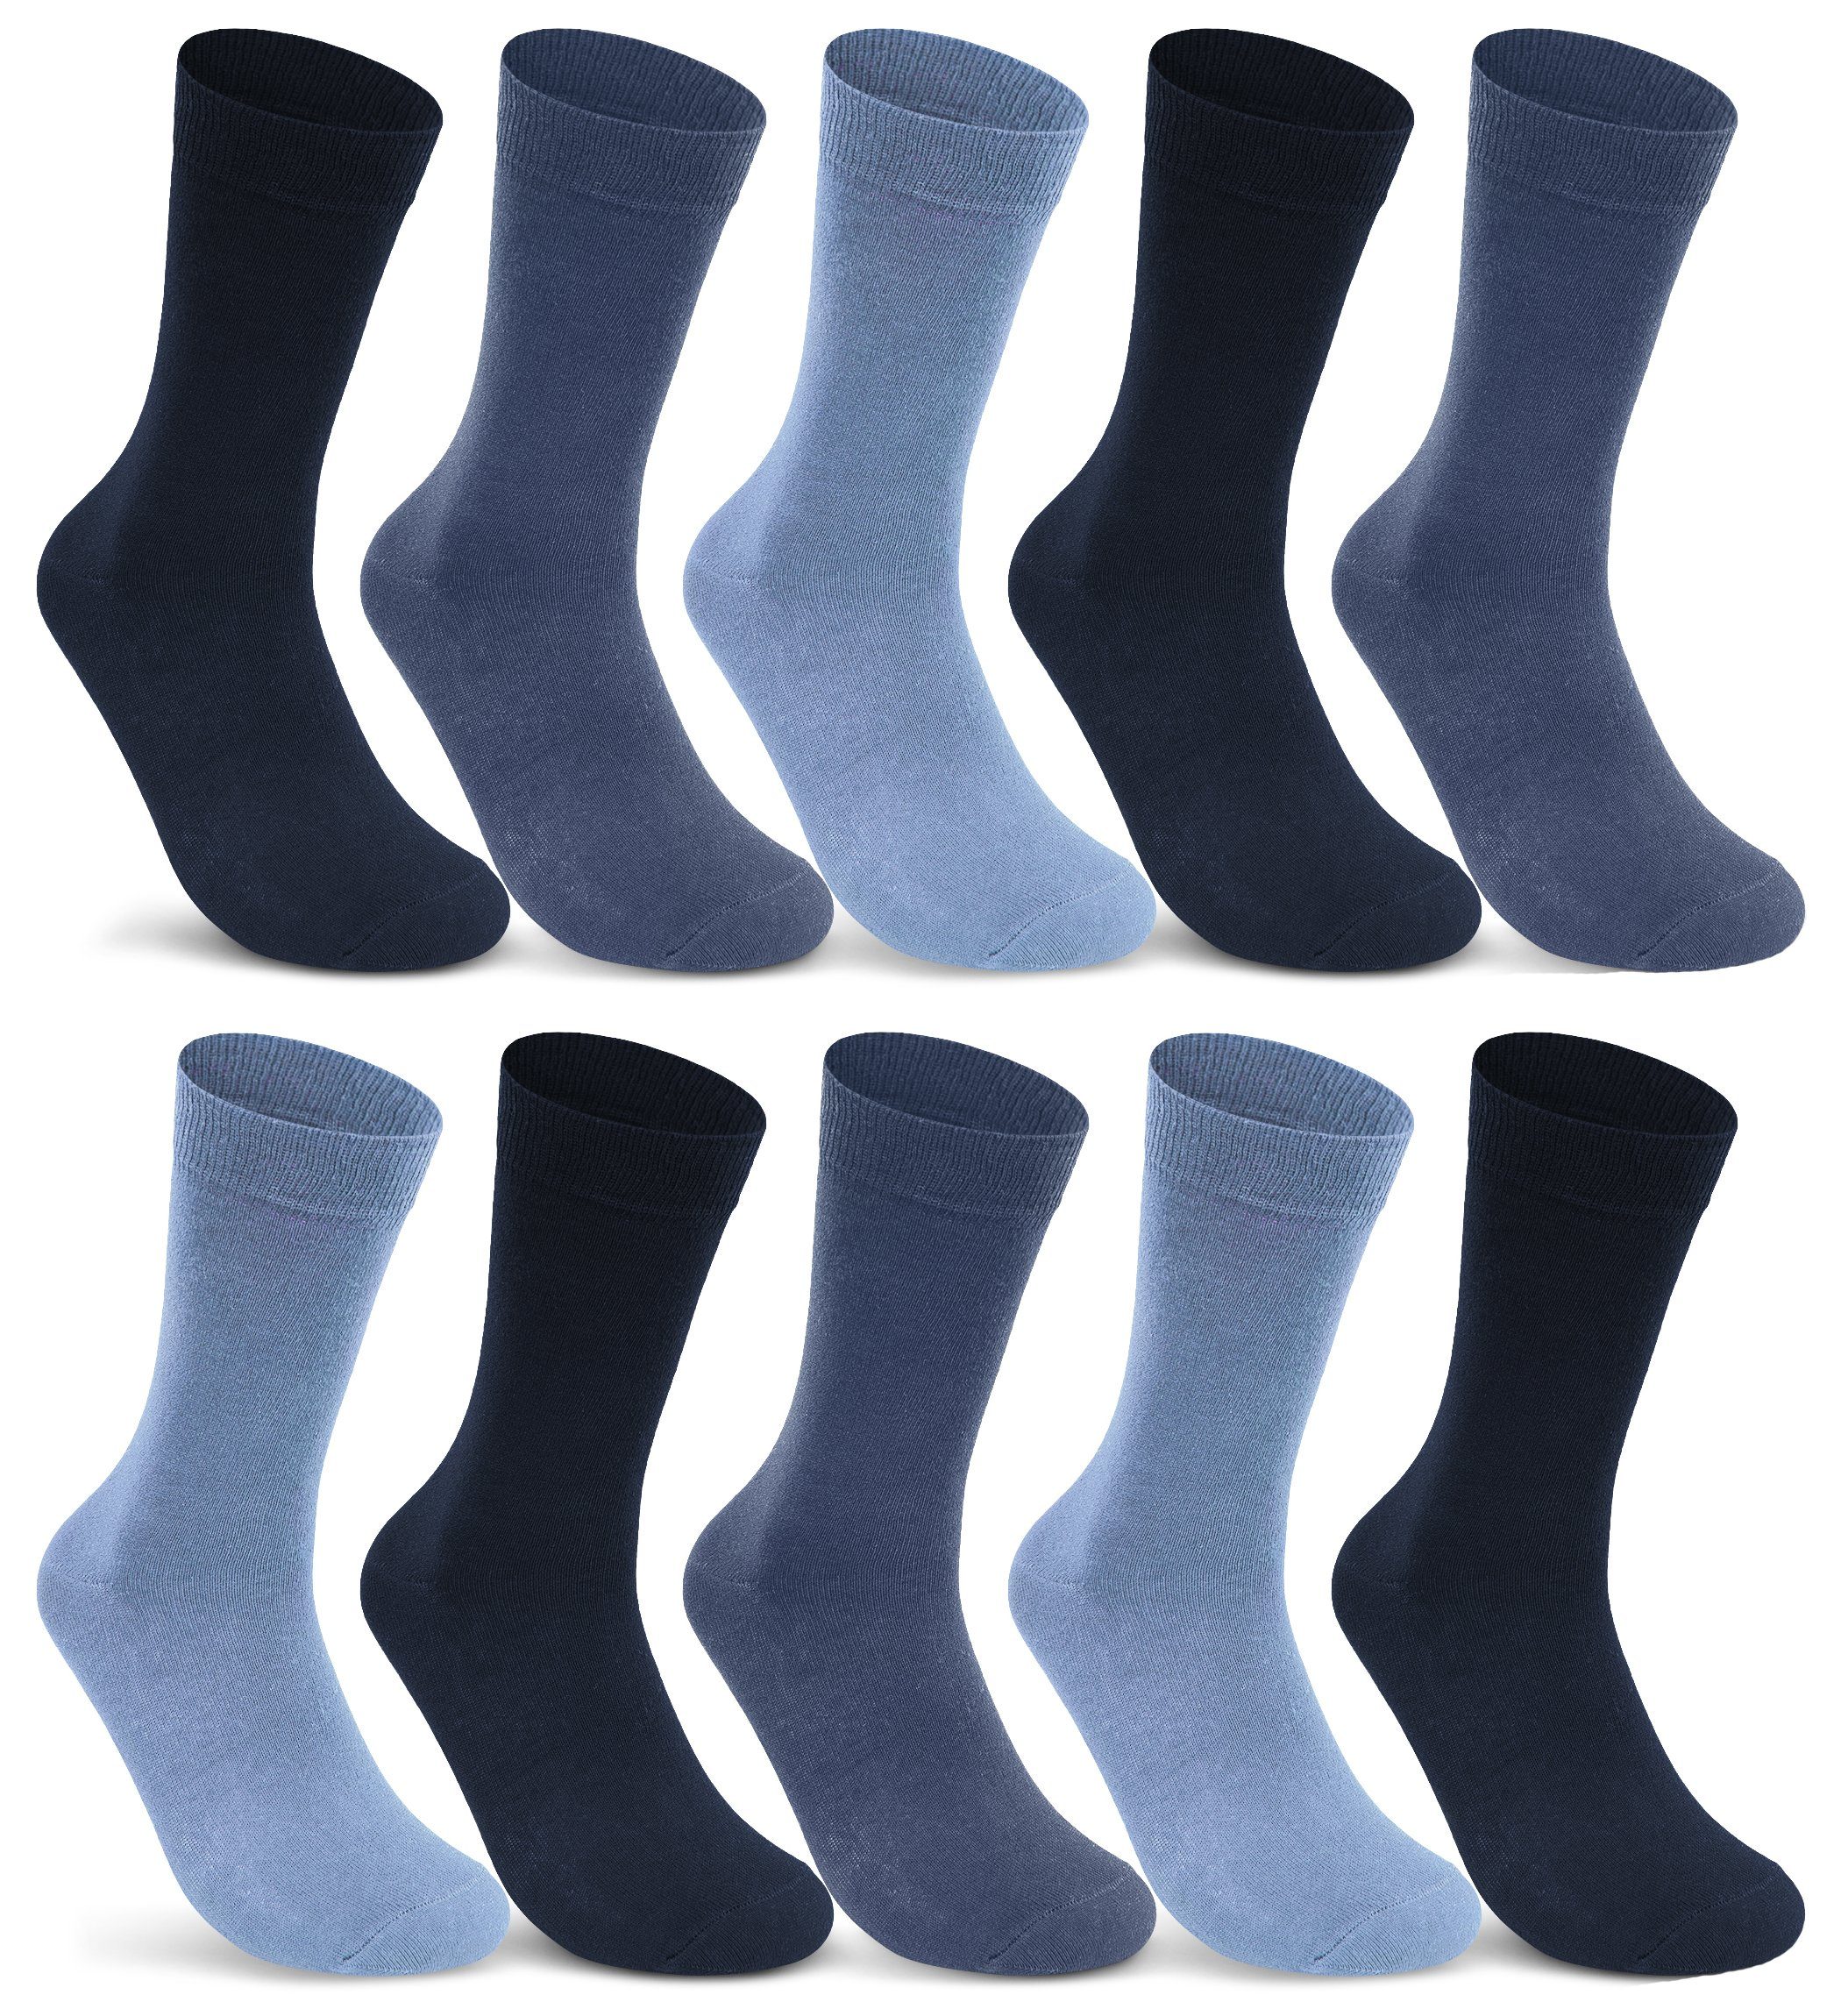 sockenkauf24 Socken 10 I 20 I 30 Paar Damen & Herren Business Socken Baumwolle (Jeans, Navy, Blau, 10-Paar, 43-46) mit Komfortbund Strümpfe - 10700 WP Jeans-Navy-Blau